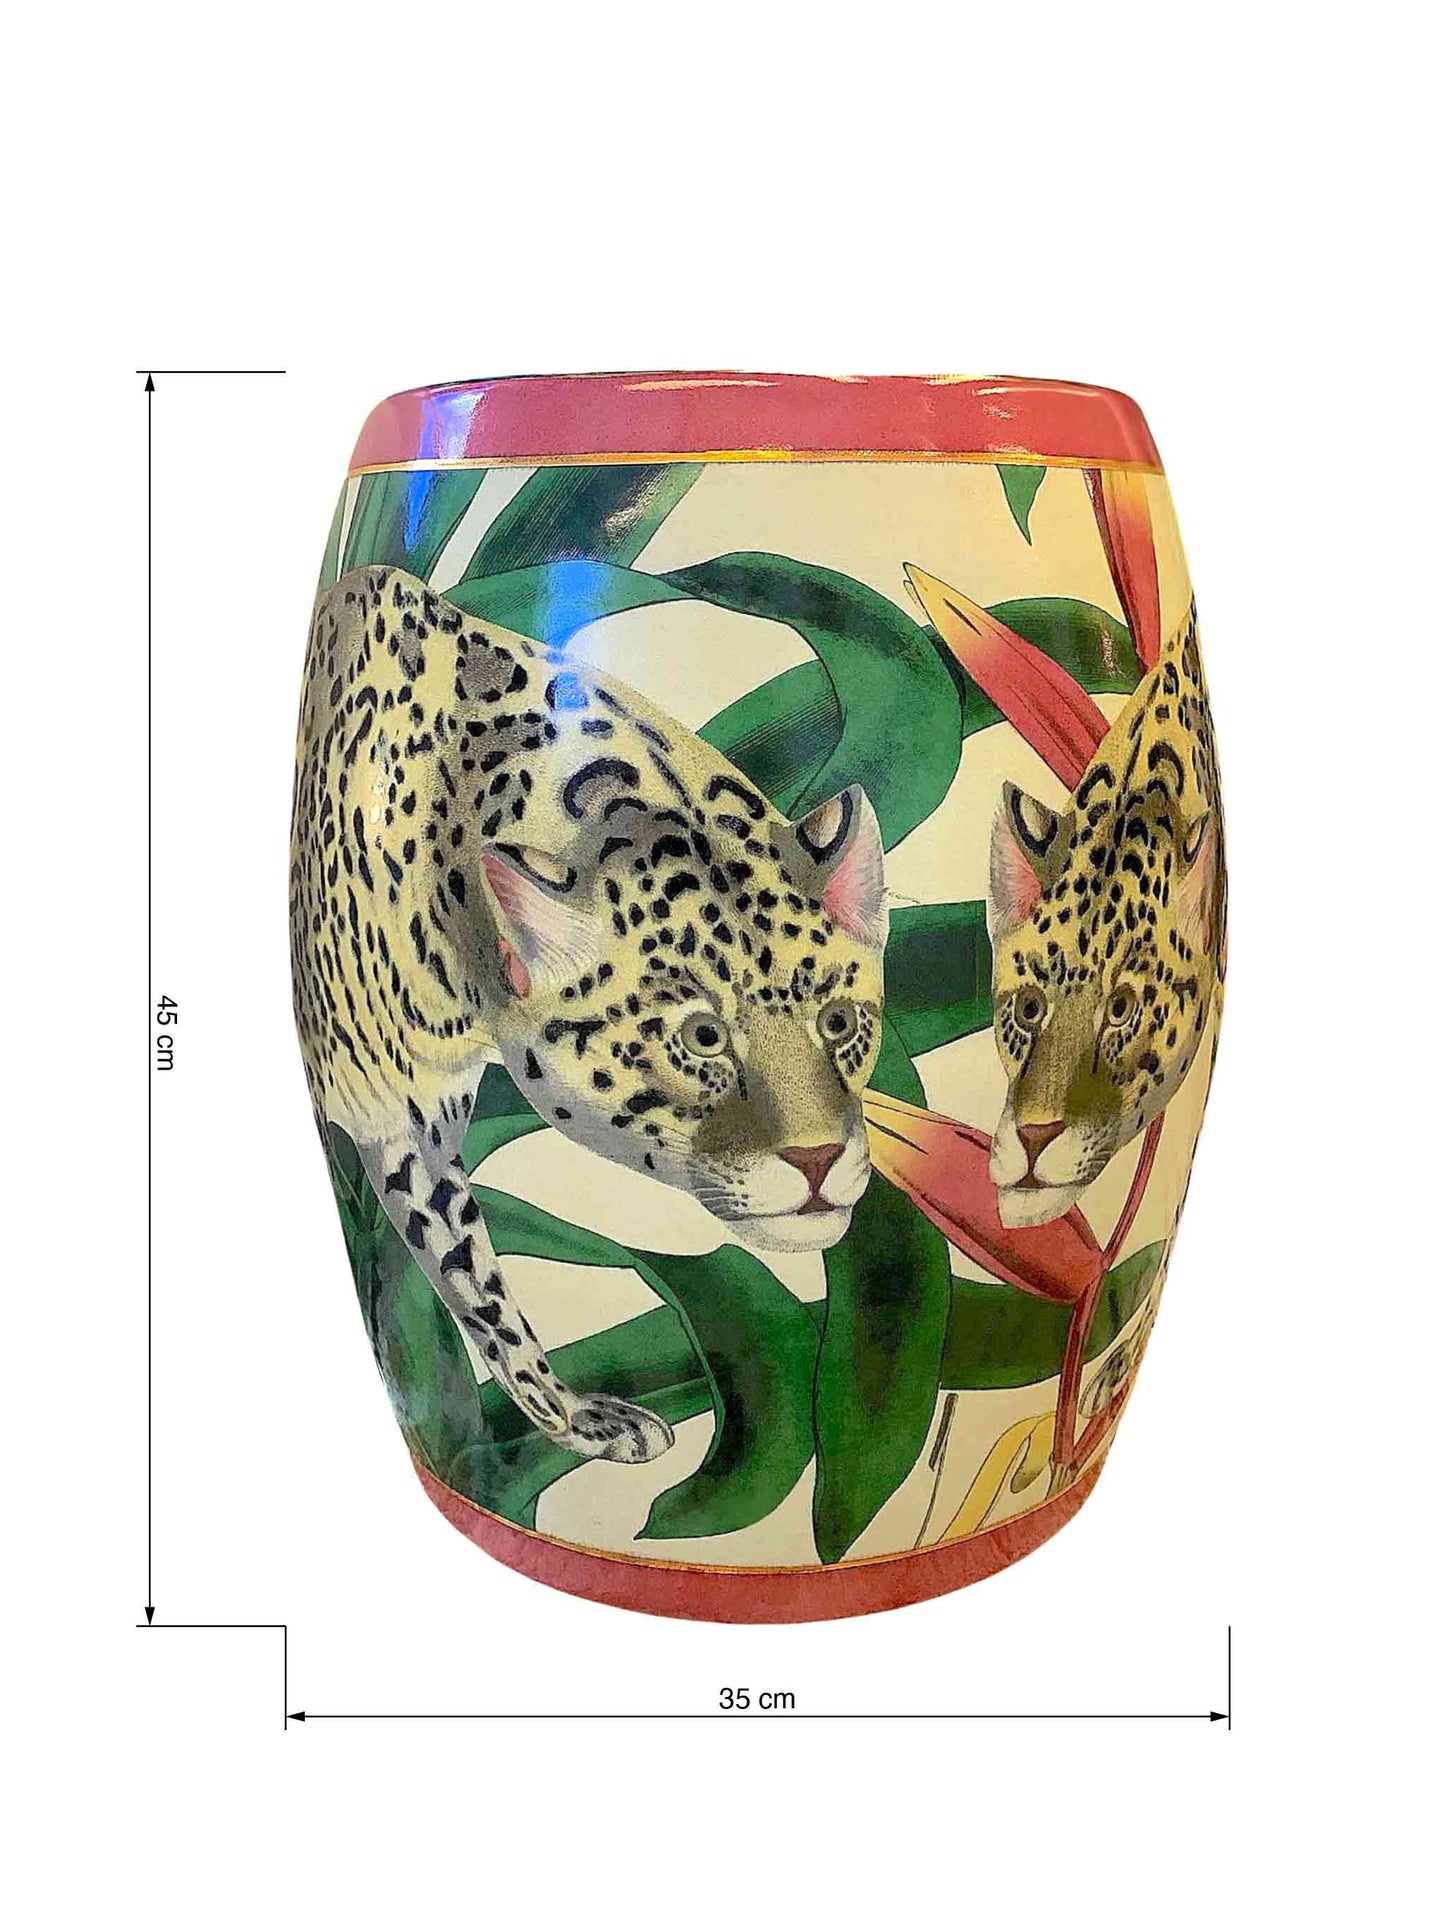 Fine Porcelain Luxury Decorative Stool with Jaguar Print by C.A.M